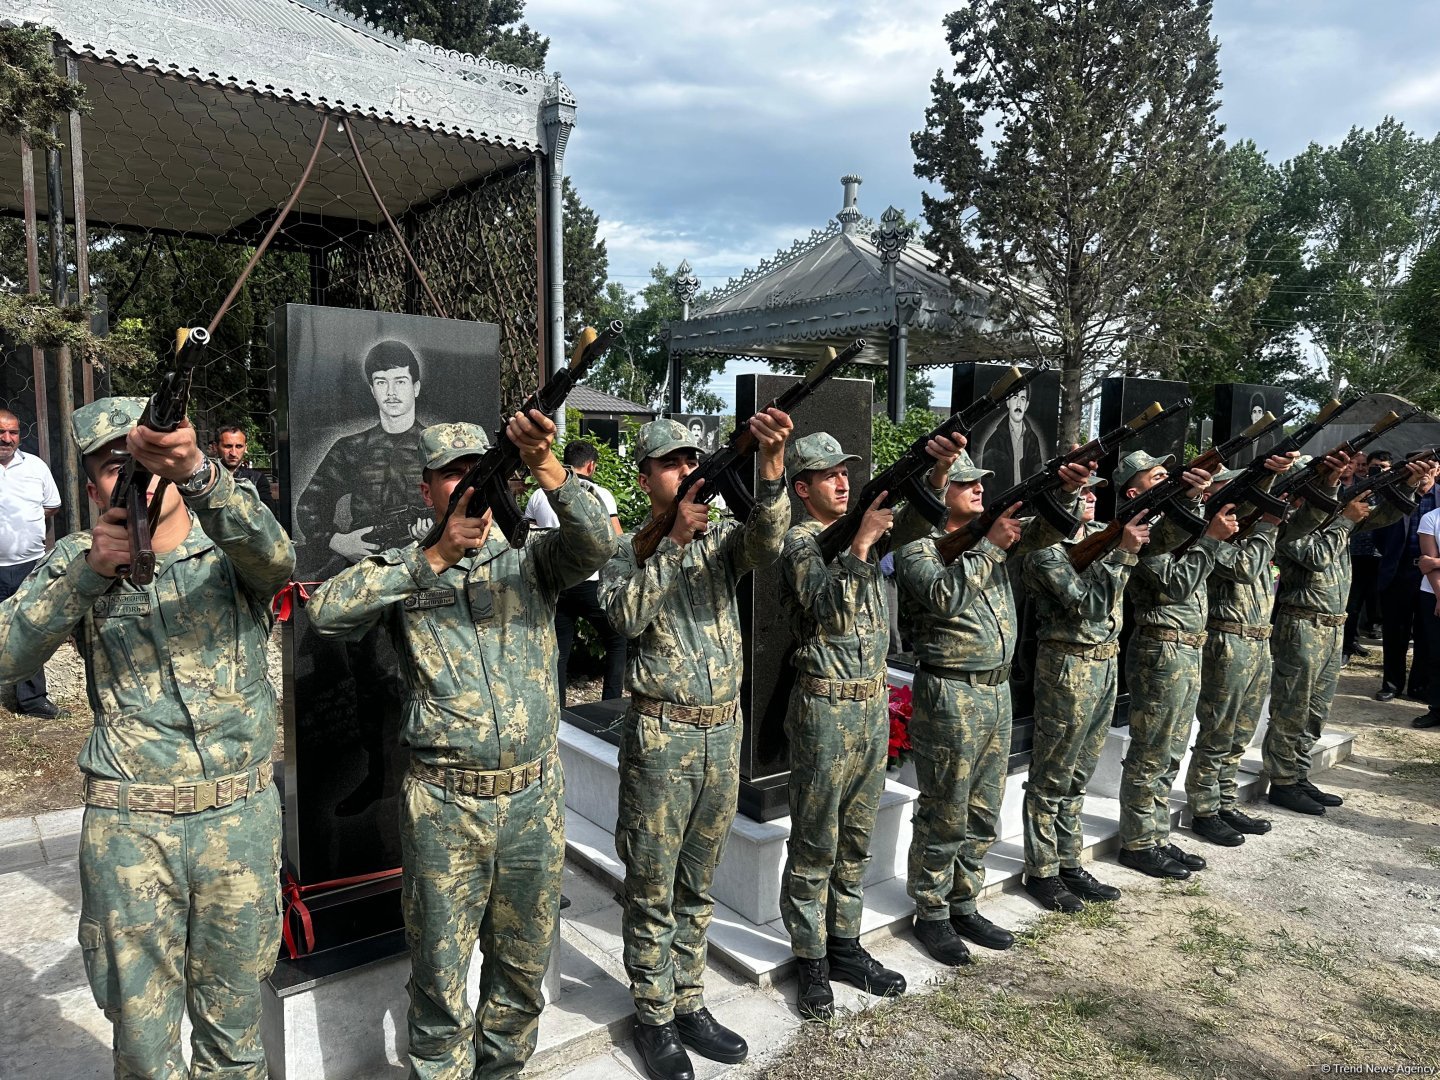 В Тертере прошли похороны шехида Адалята Алиева, пропавшего без вести во время I Карабахской войны (ФОТО)